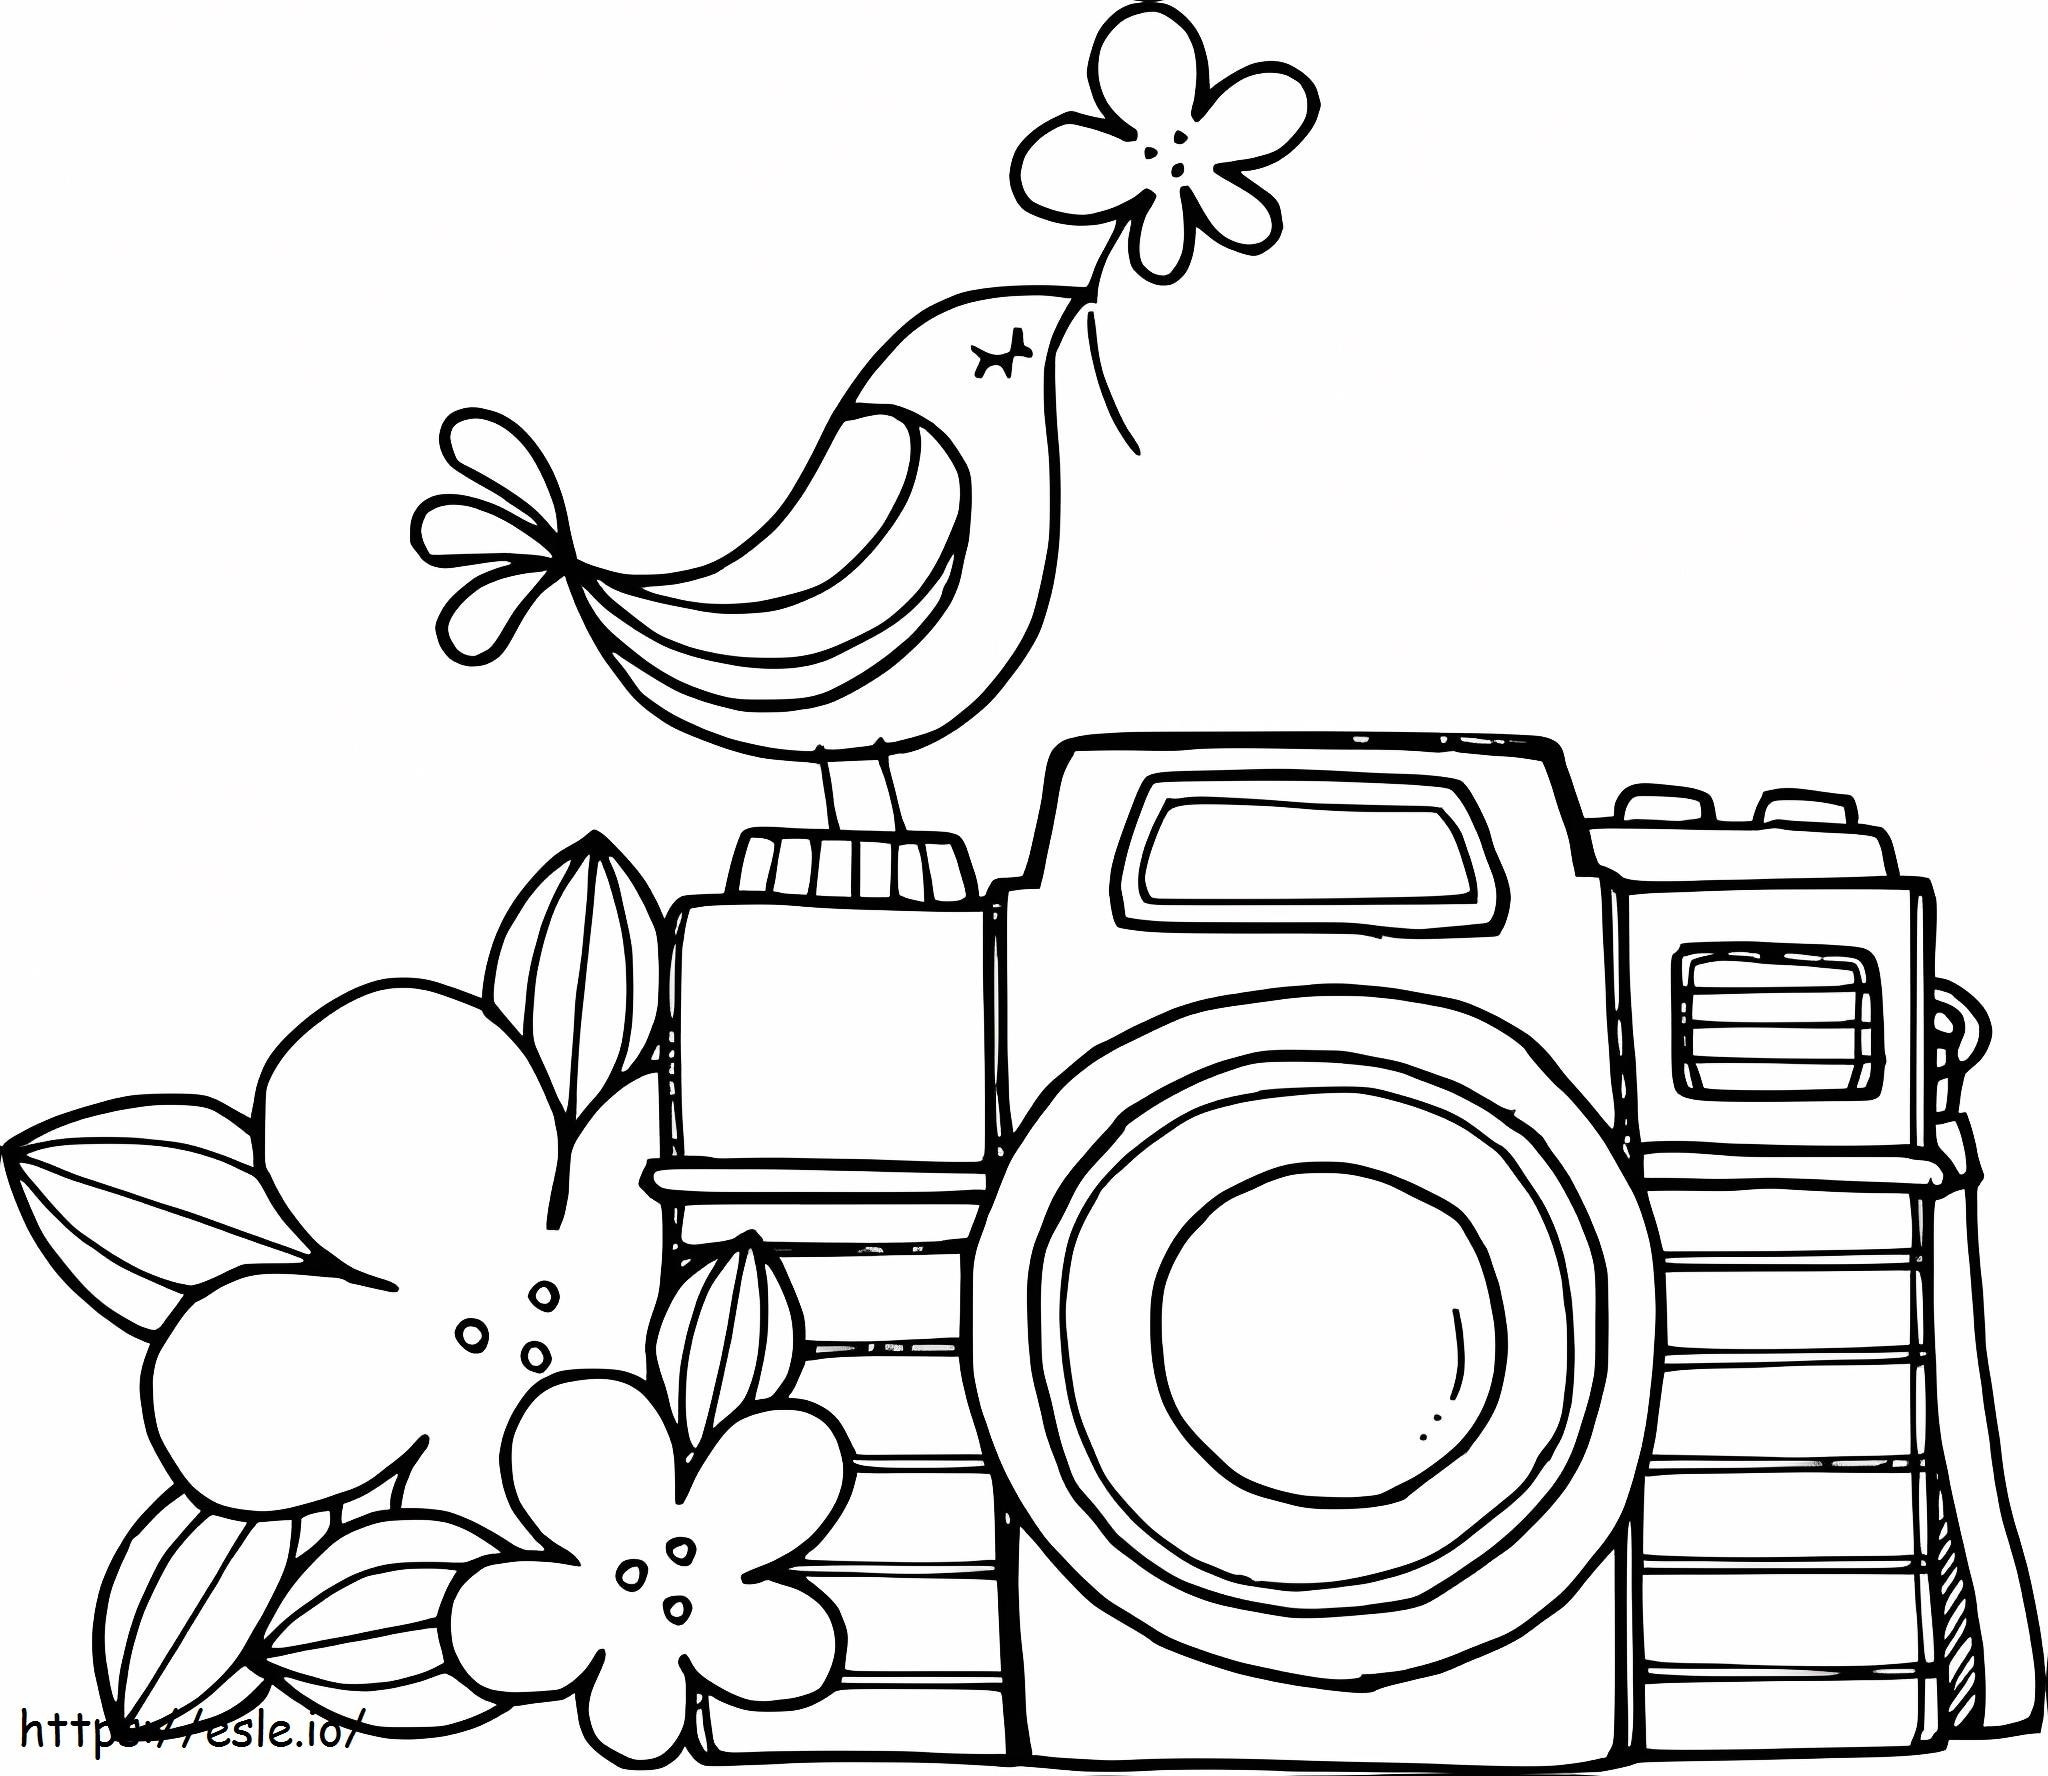 Coloriage Caméra fleur et pied d'oiseau à imprimer dessin